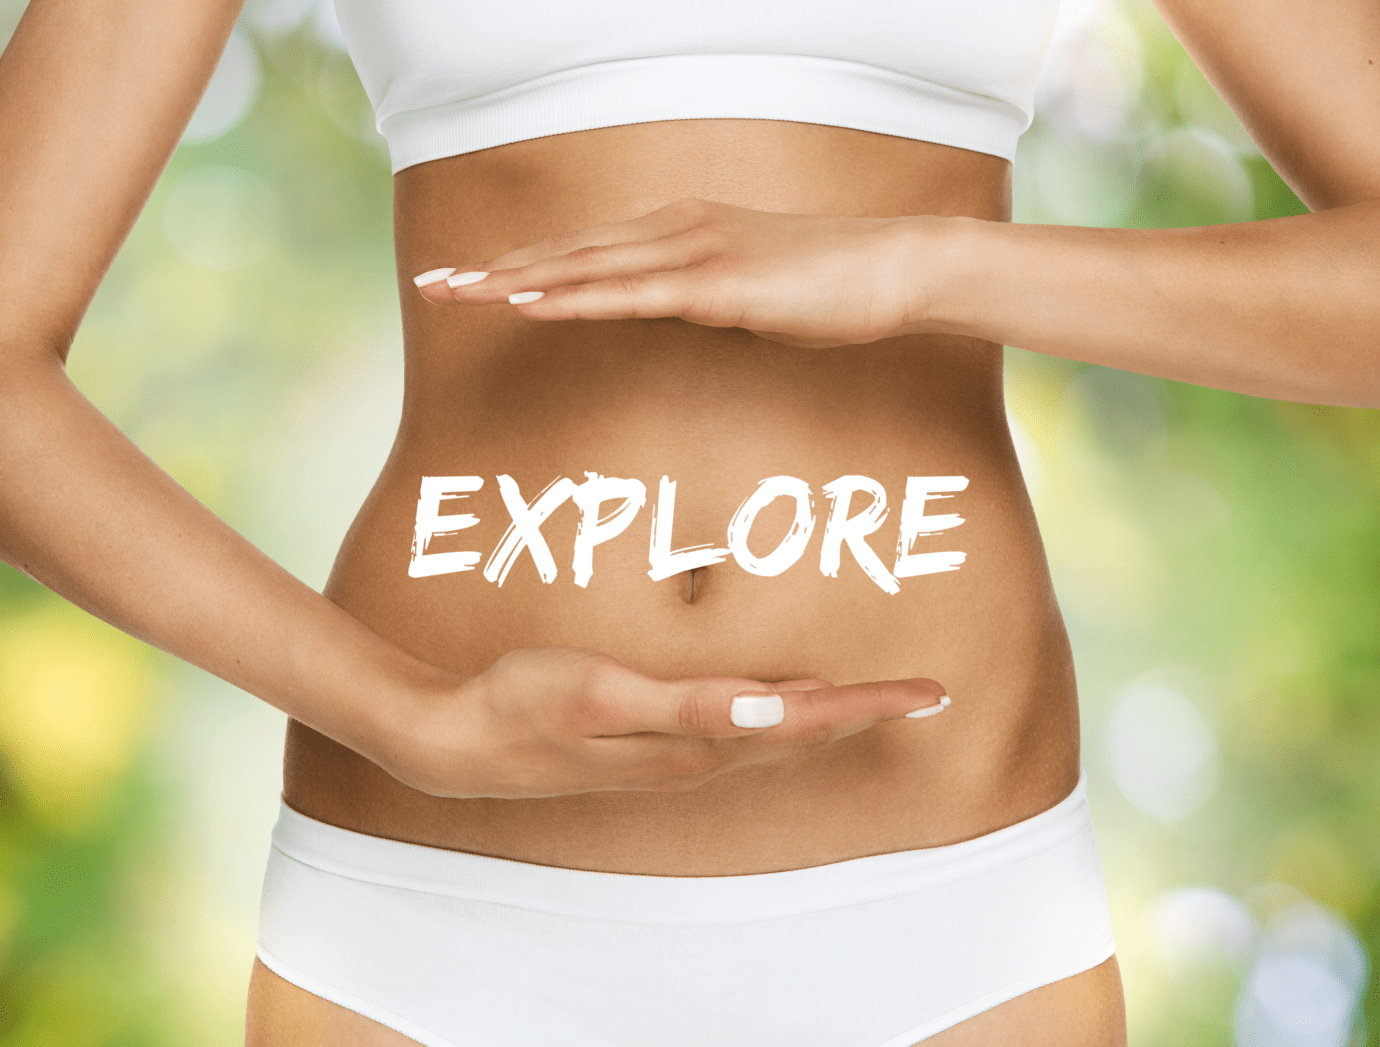 Explore your gut